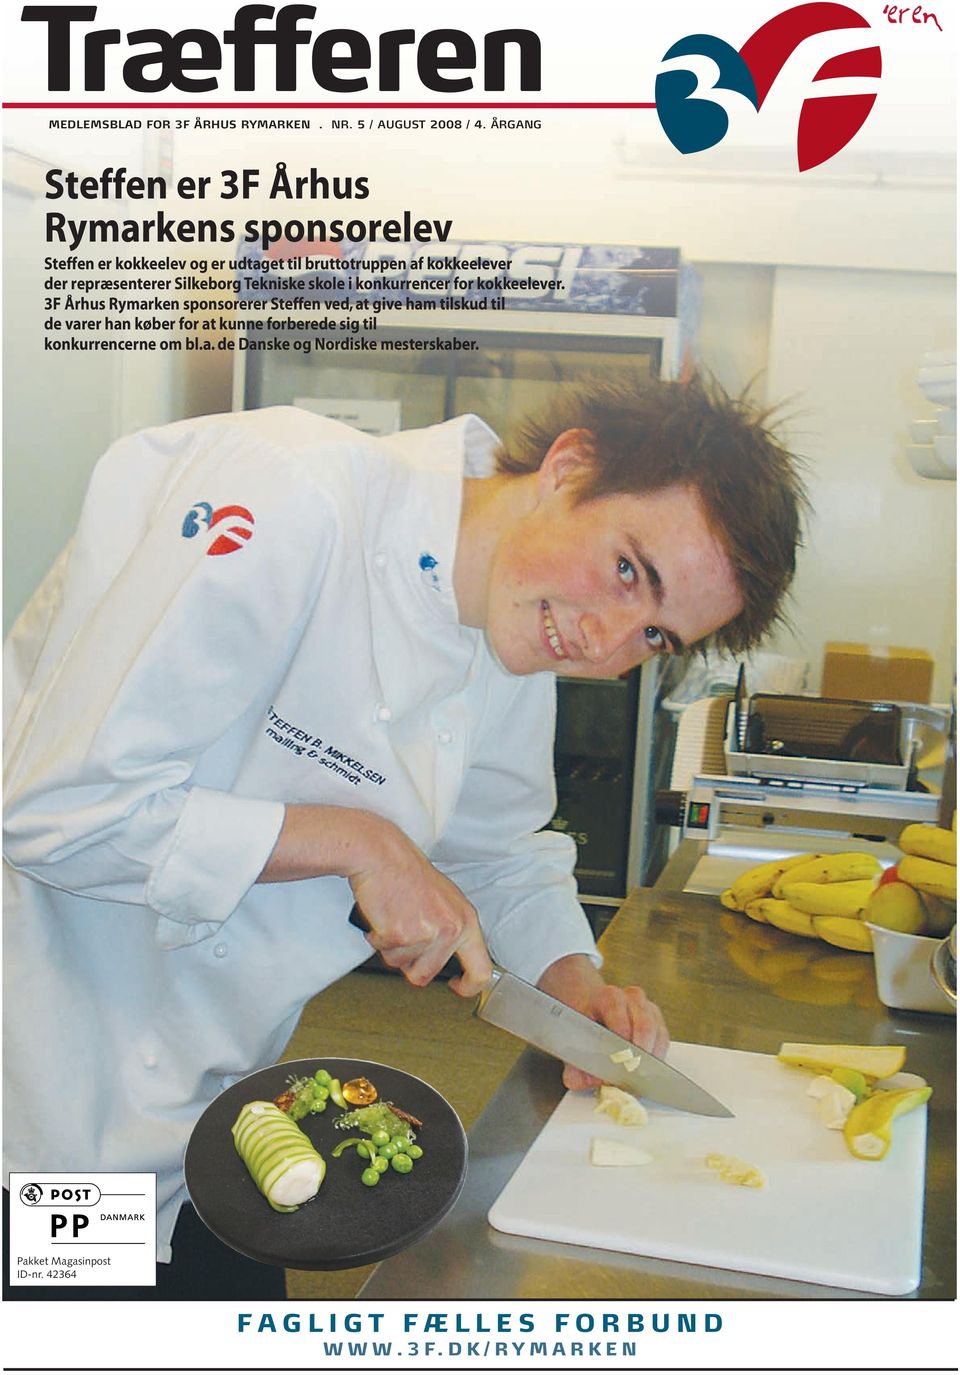 repræsenterer Silkeborg Tekniske skole i konkurrencer for kokkeelever.